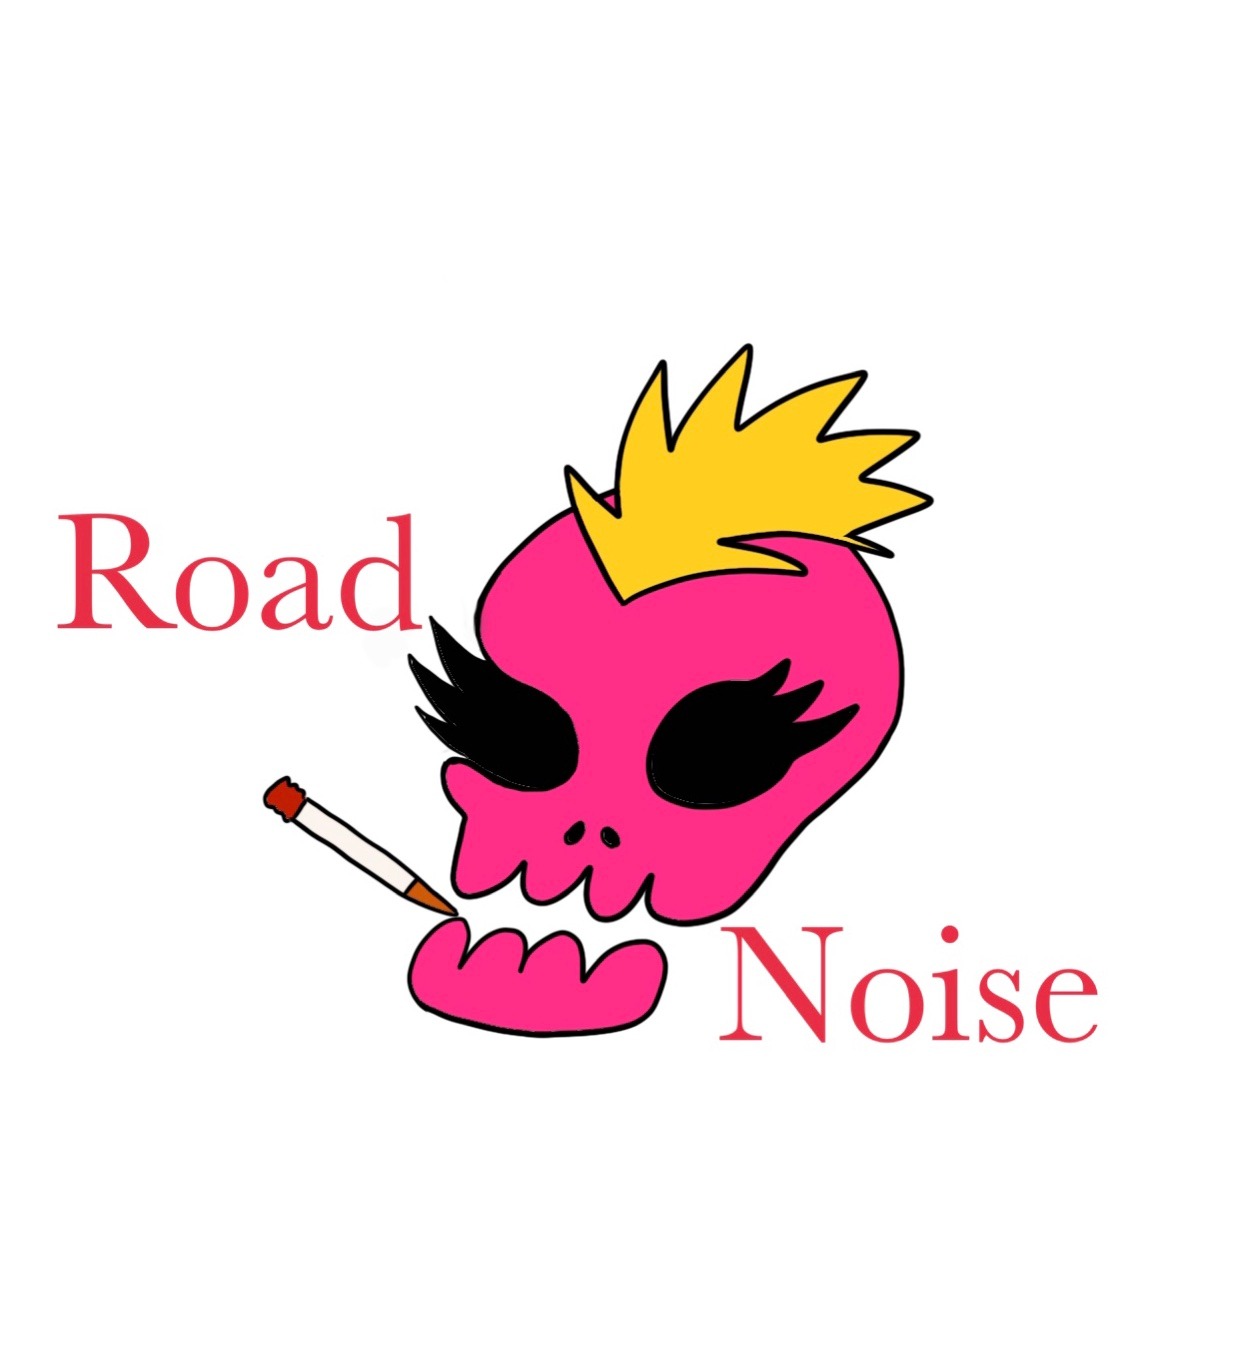 Road Noise net shop